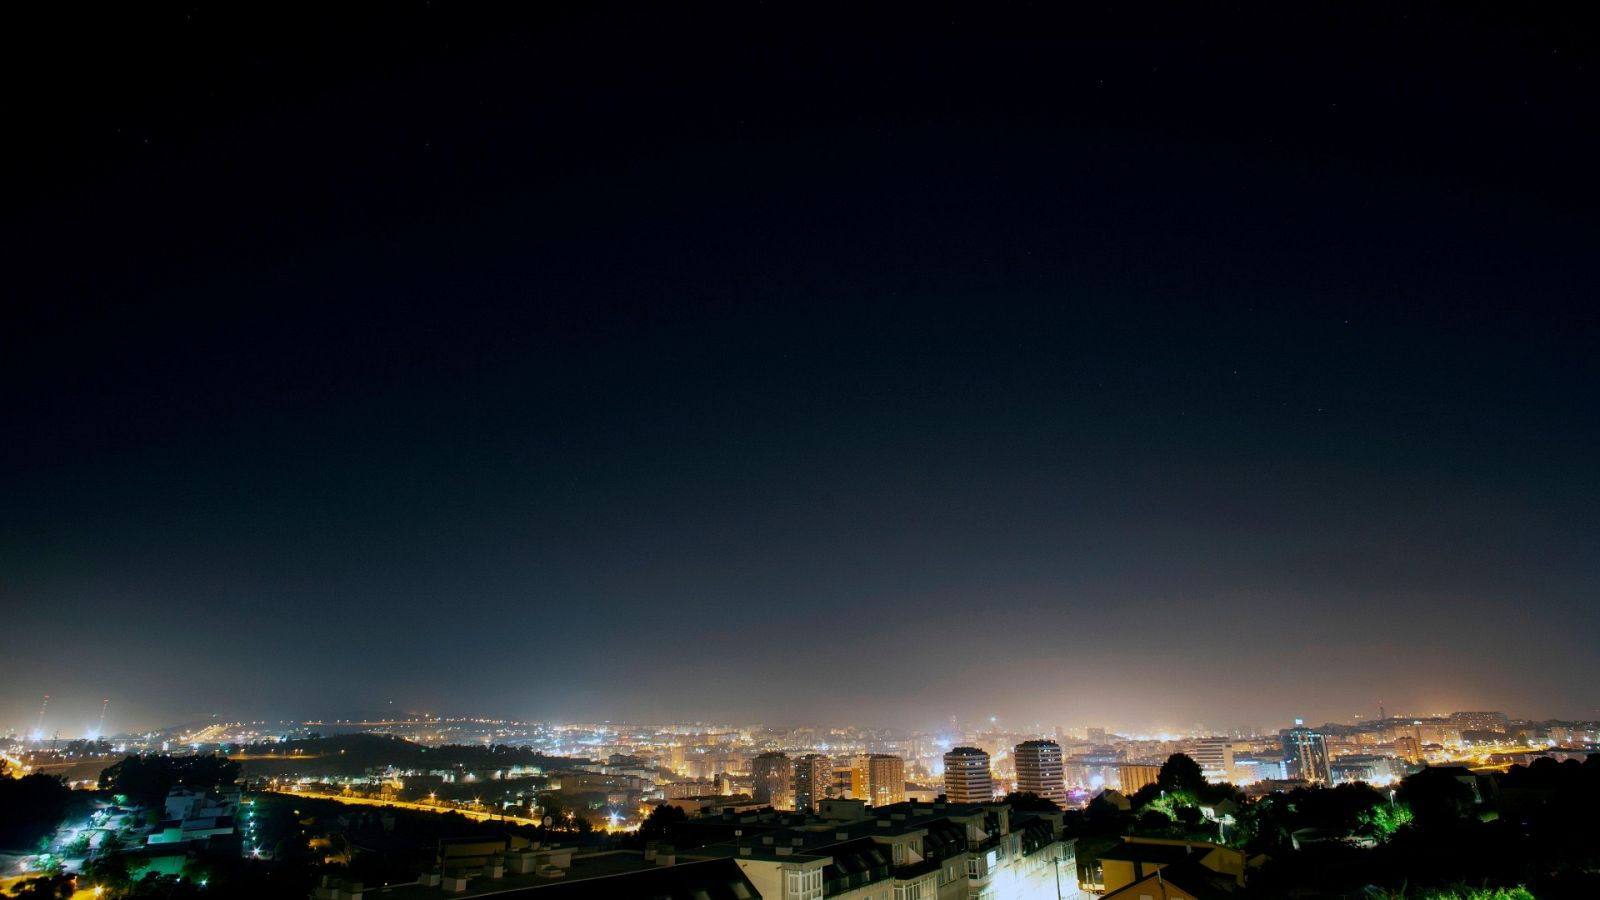 Los cielos estrellados son cada vez menos visibles desde las ciudades debido a la contaminación lumínica